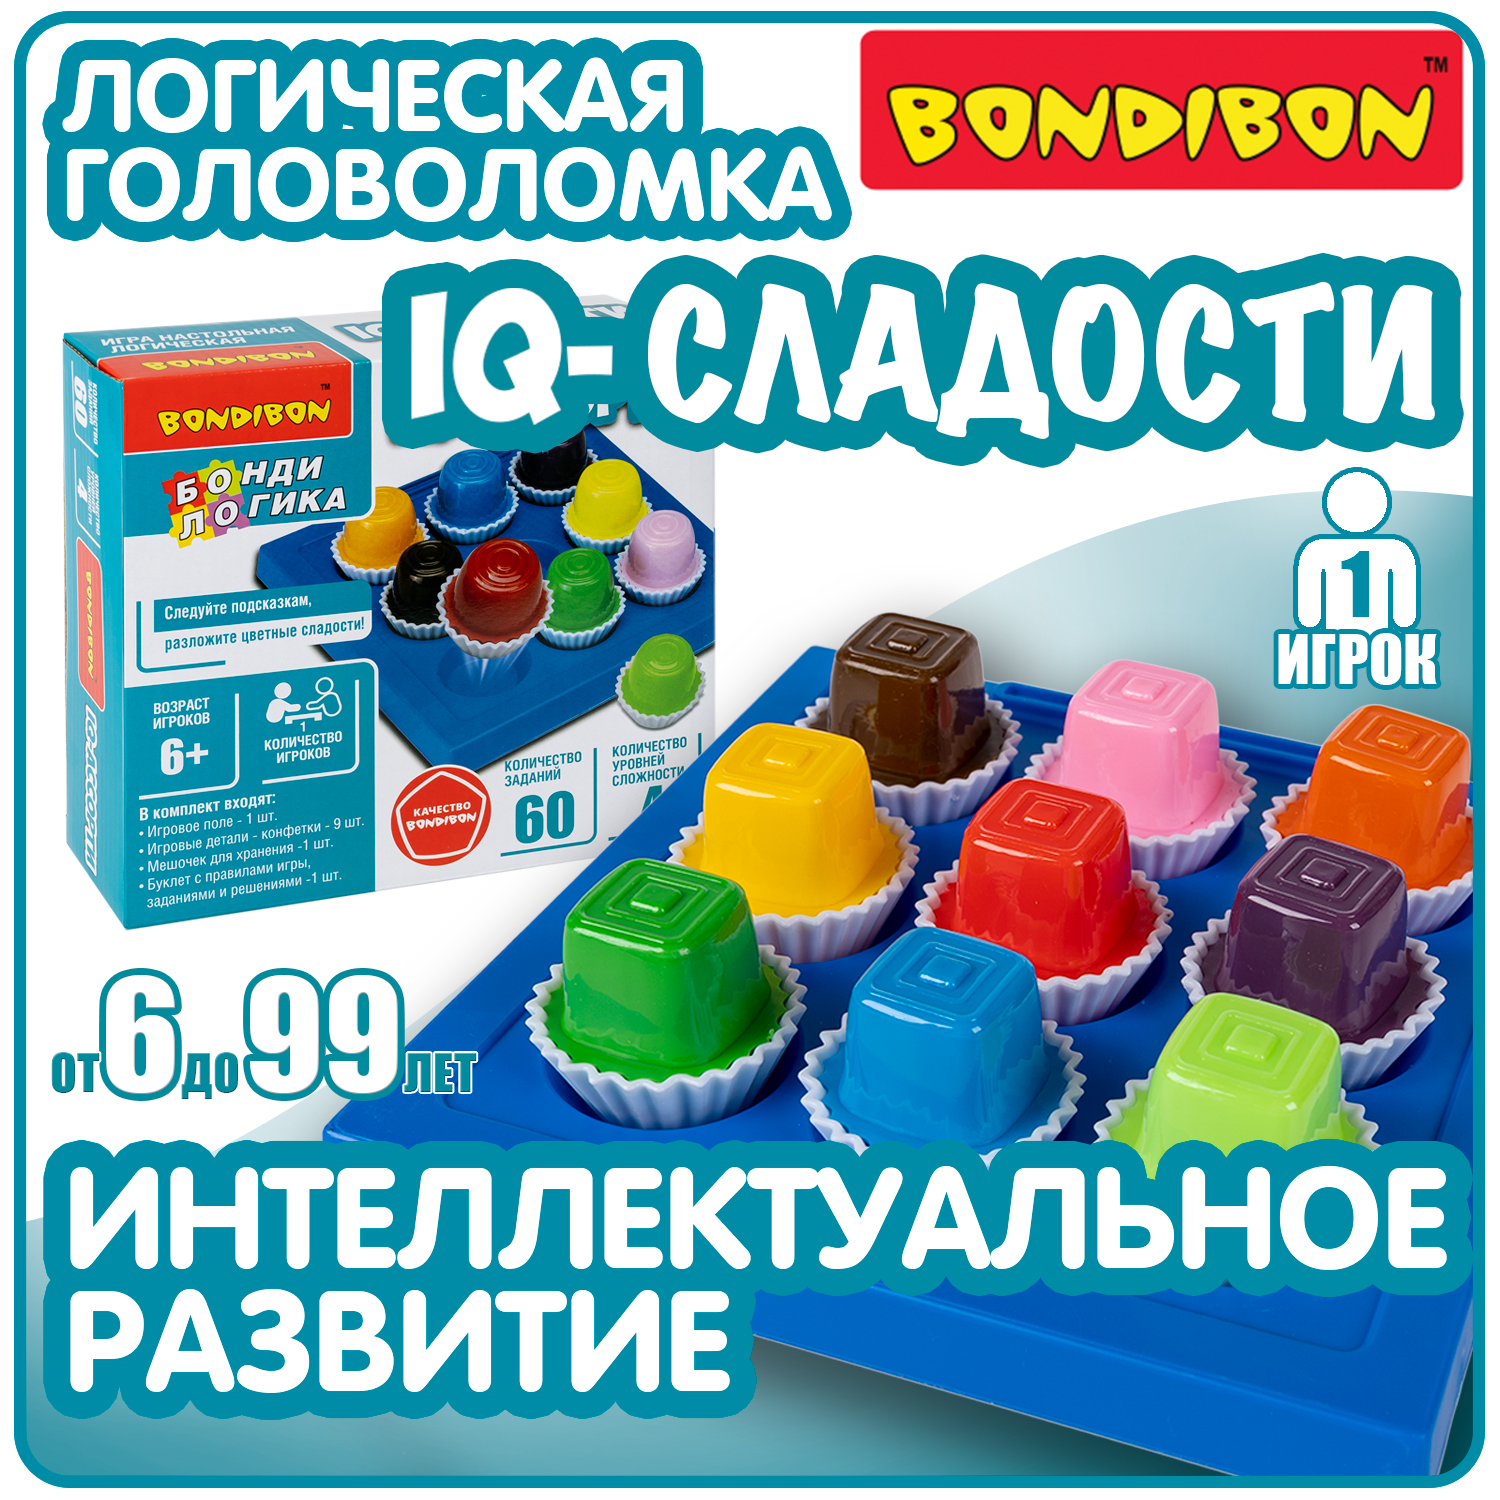 Настольная логическая игра BondibonIQ-СЛАДОСТИ квадратные конфеты развивающая головоломка